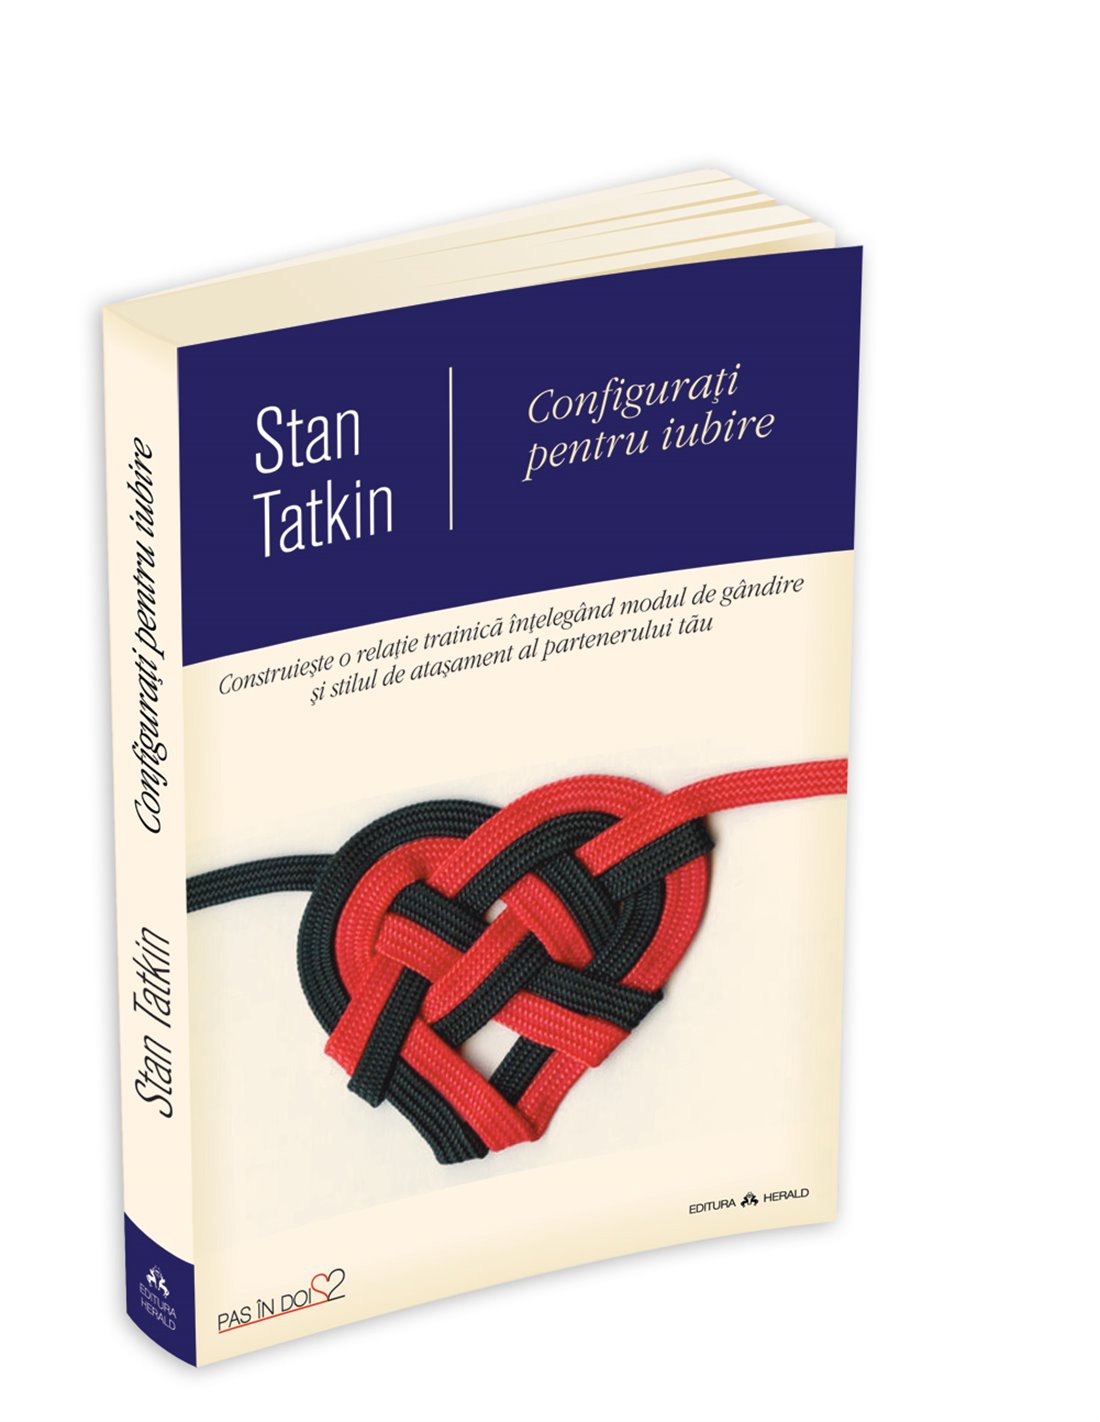 Configurati pentru iubire - Stan Tatkin | Editura Herald